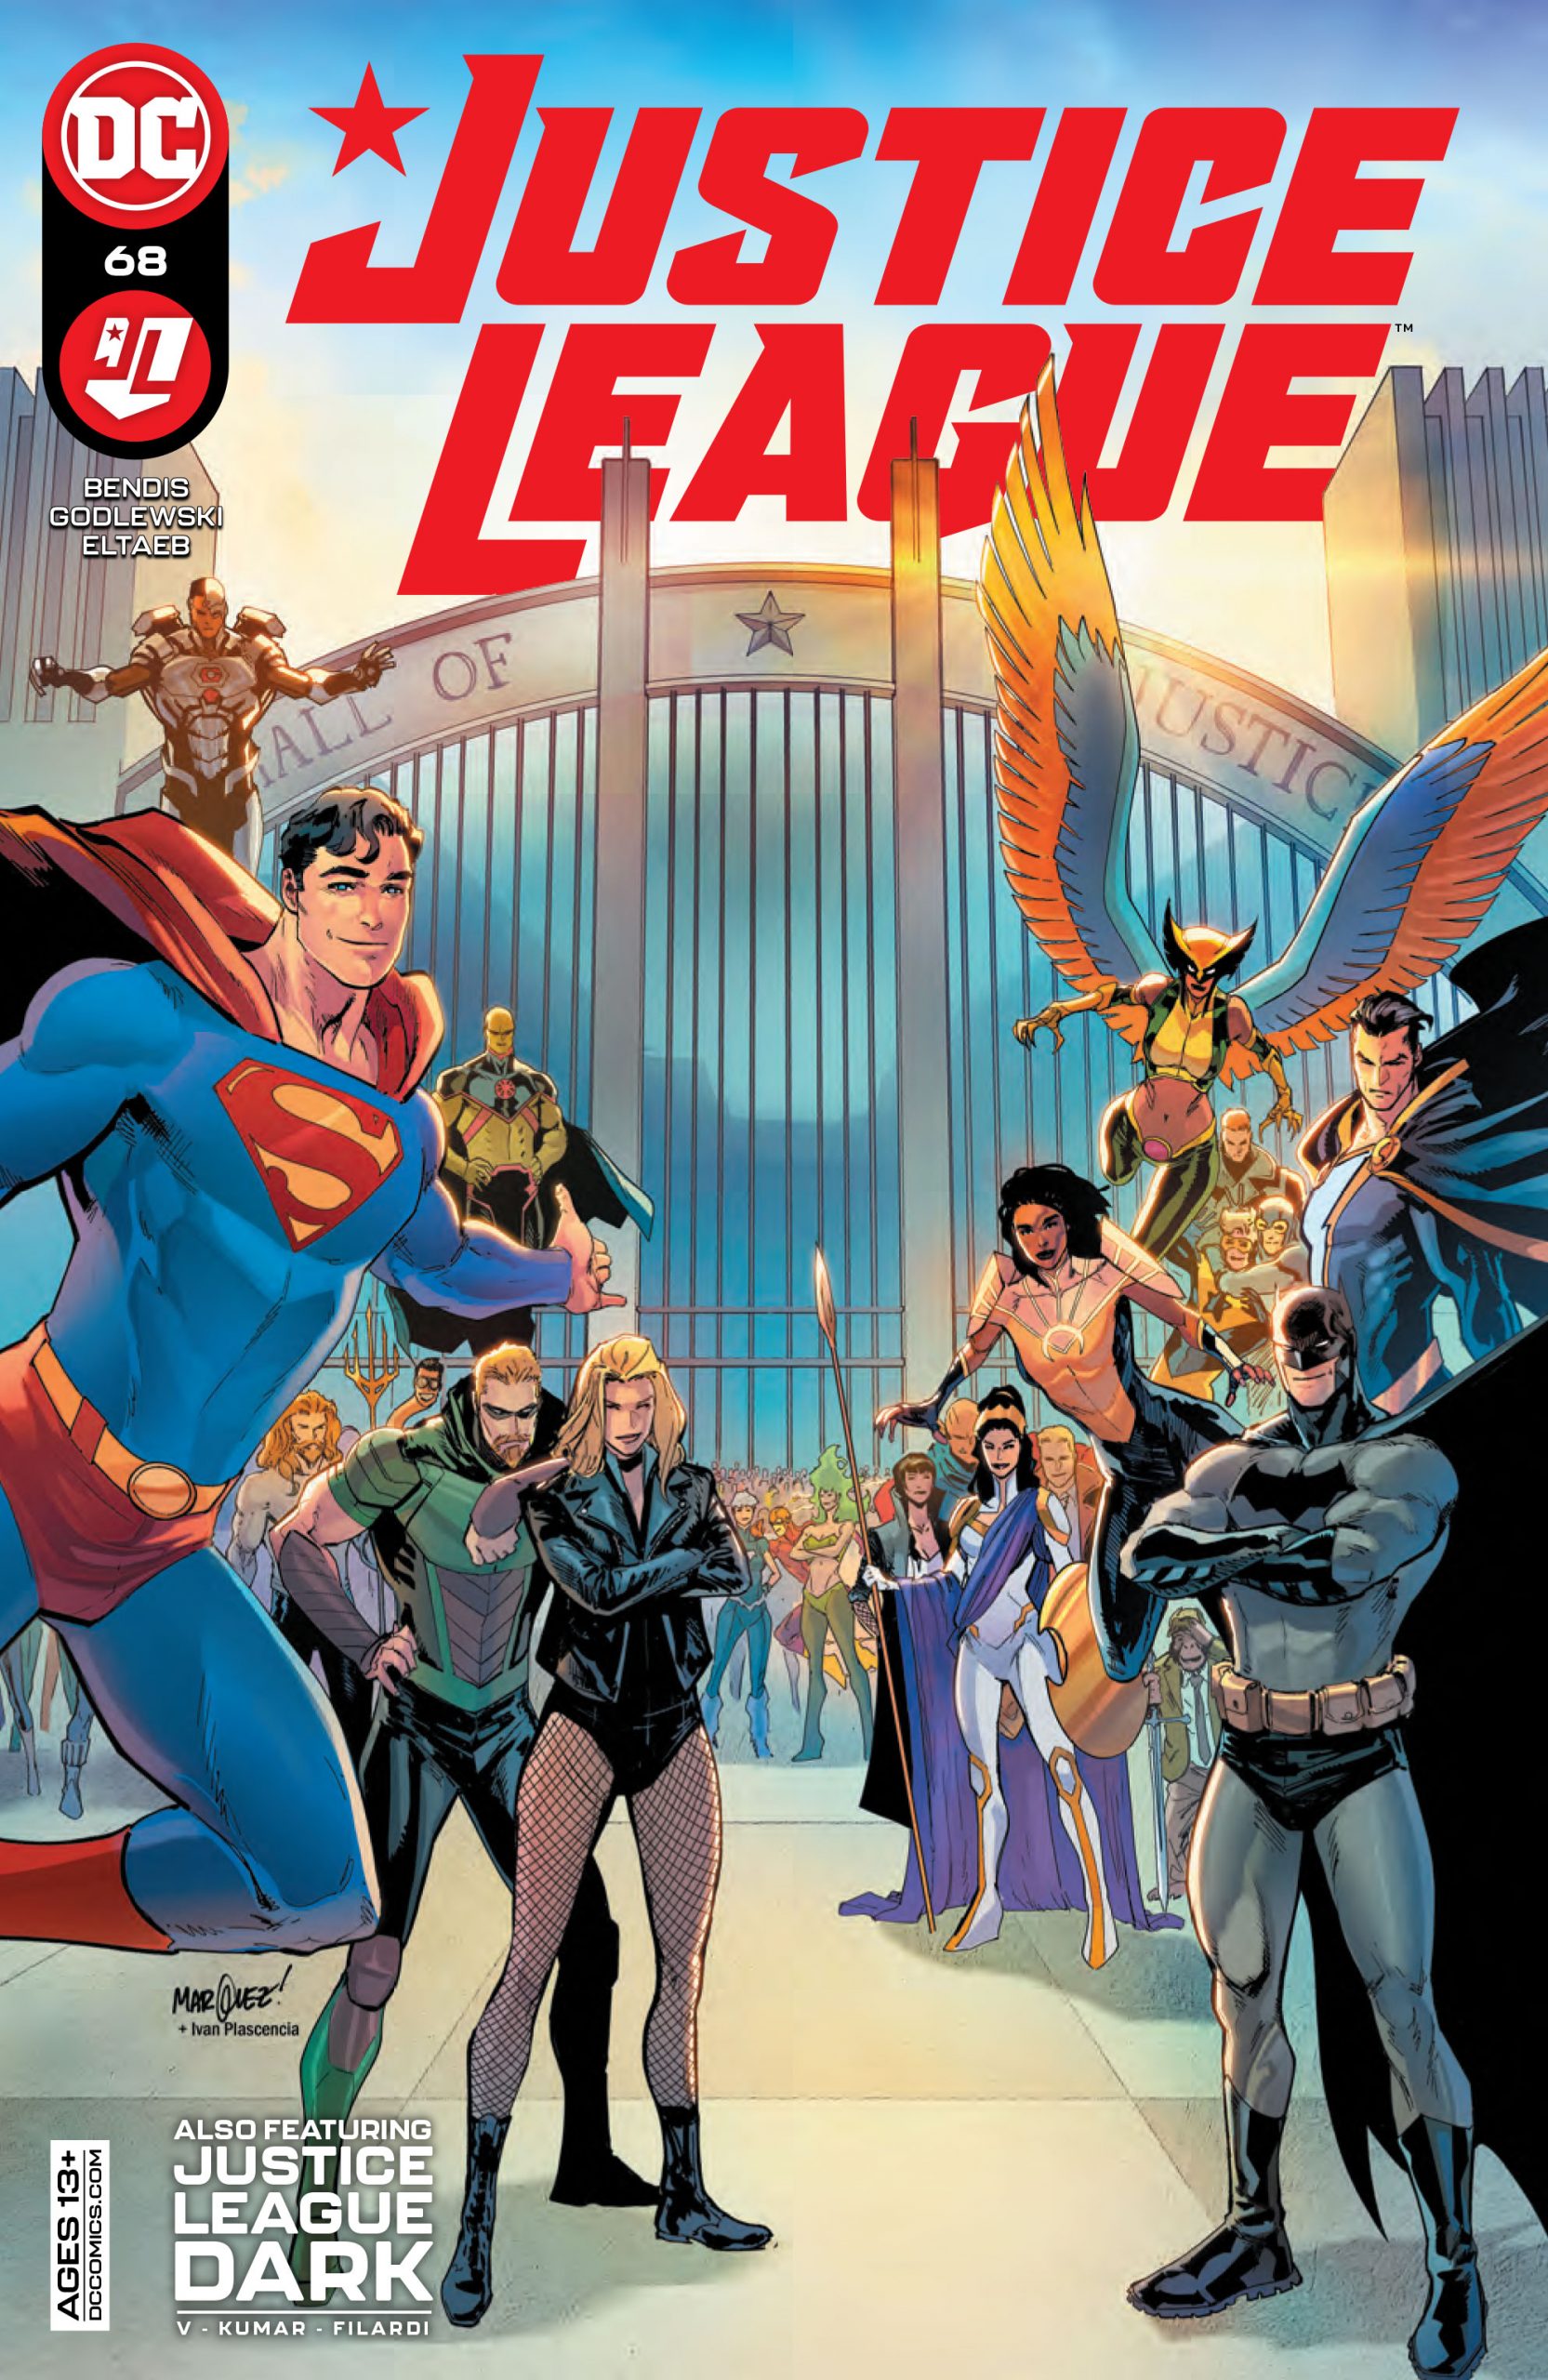 DC Preview: Justice League #68